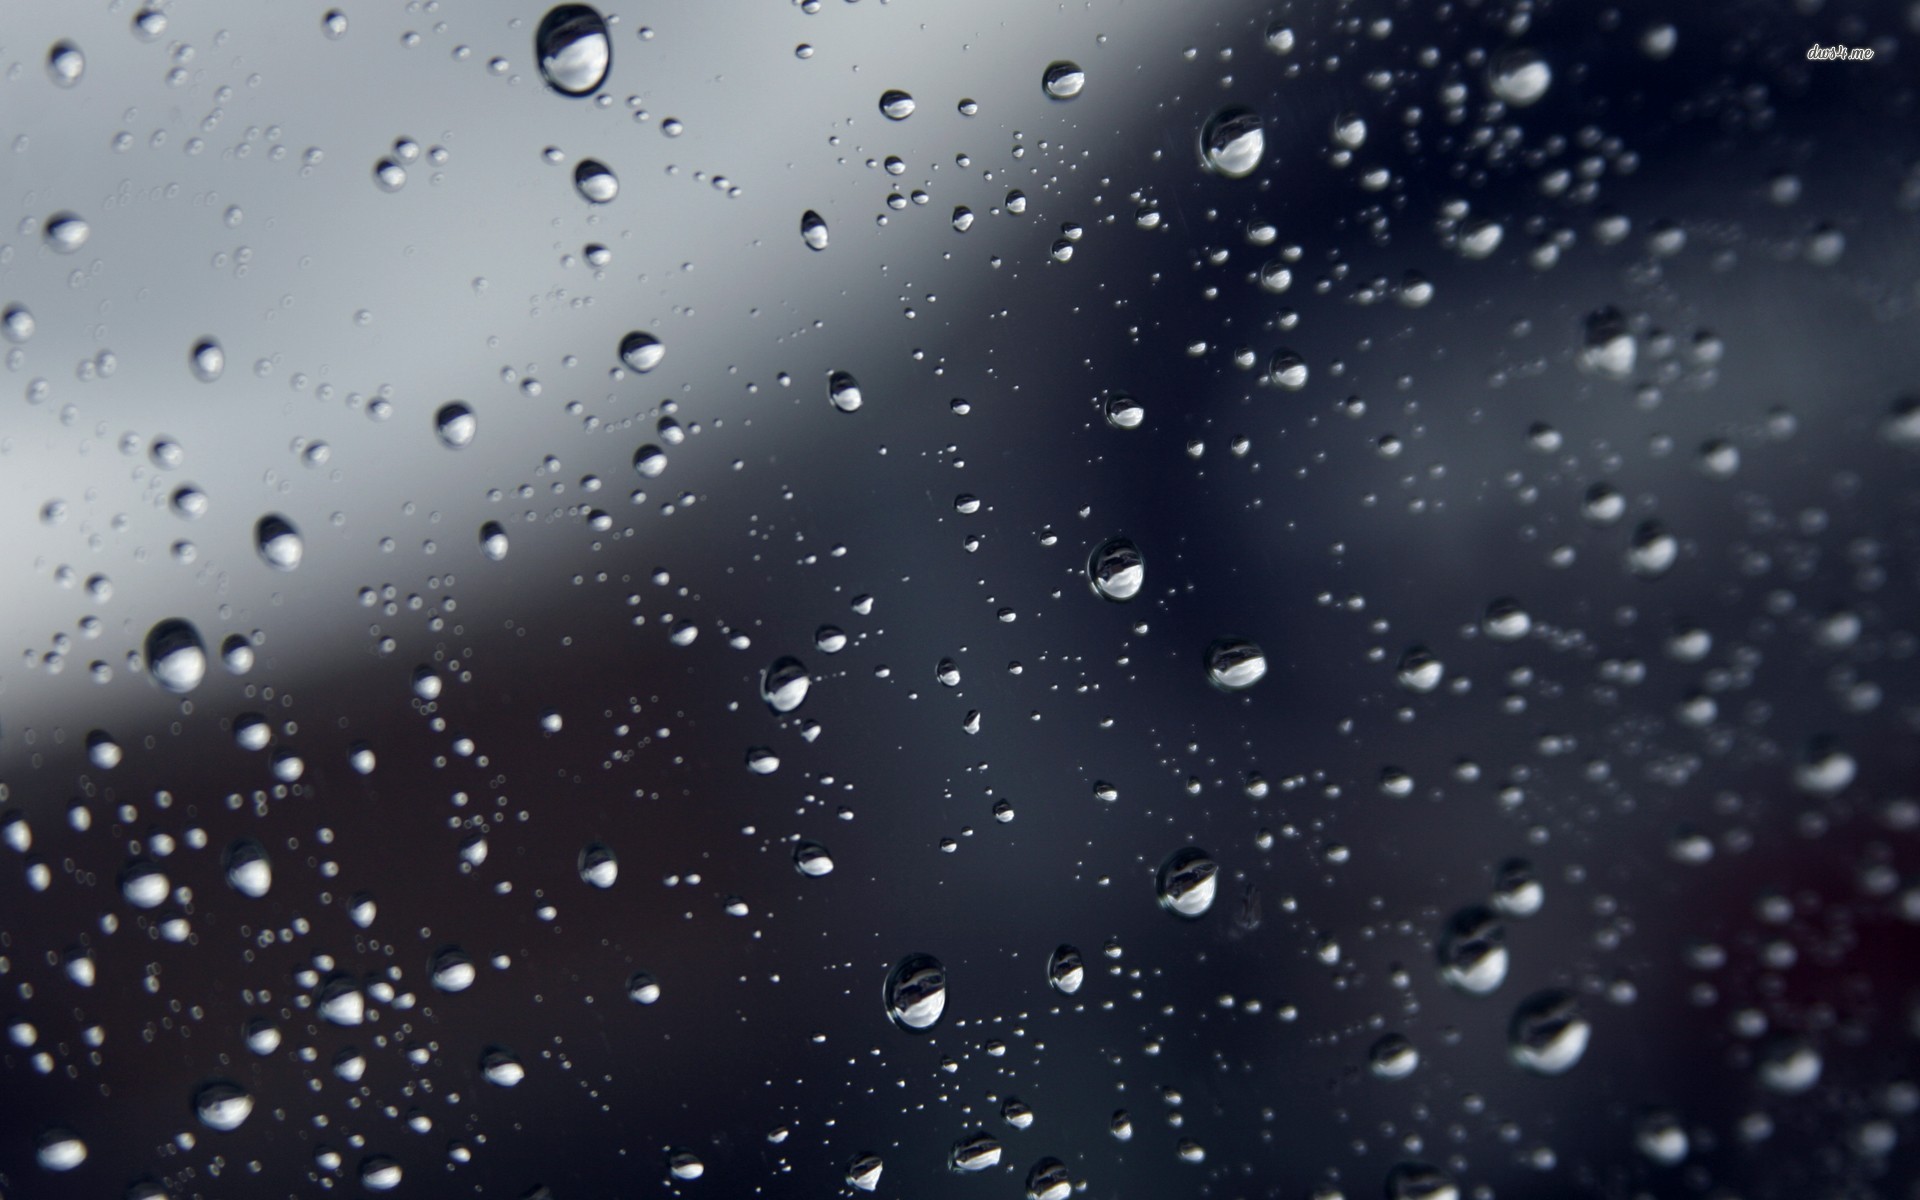 Hãy chiêm ngưỡng bức ảnh nền Mưa Buồn HD xúc động đến từng hạt mưa. Với độ phân giải cao và gam màu trầm buồn, chắc chắn sẽ làm bạn cảm nhận được nỗi đau và sự cô độc trong ngày mưa.